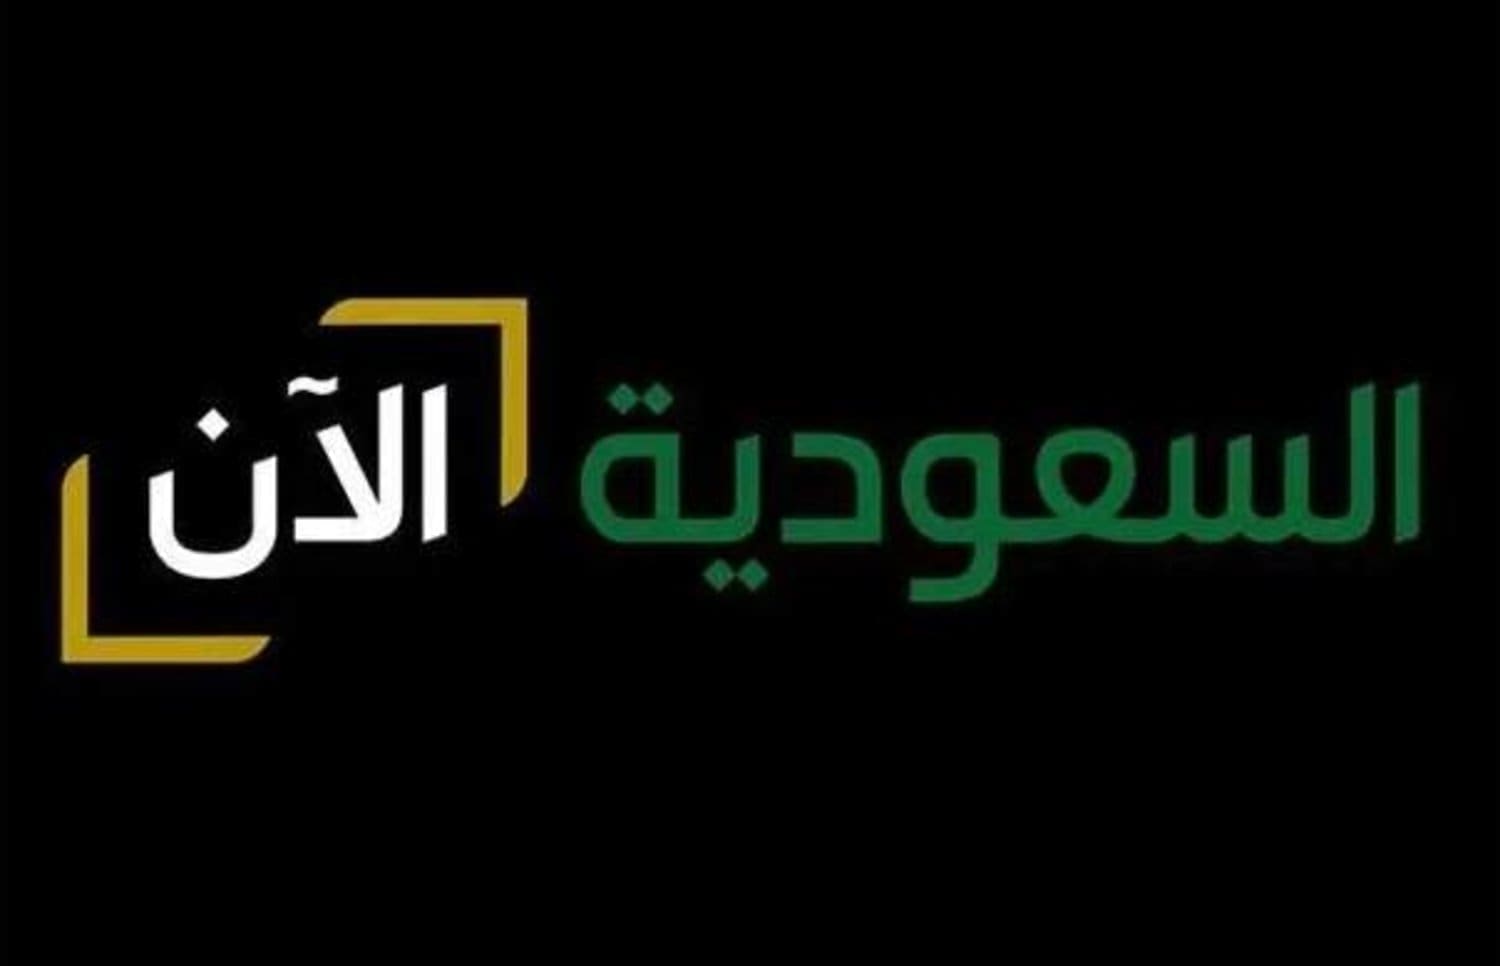 قناة السعودية الآن - مصدر الصورة: جوجل